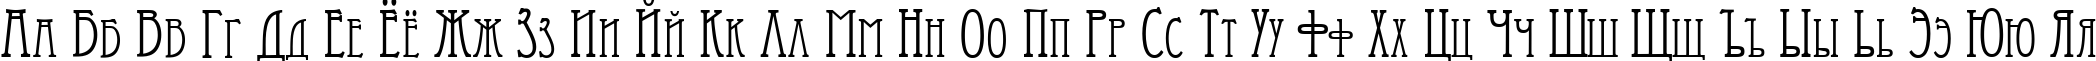 Пример написания русского алфавита шрифтом Artist-Modern